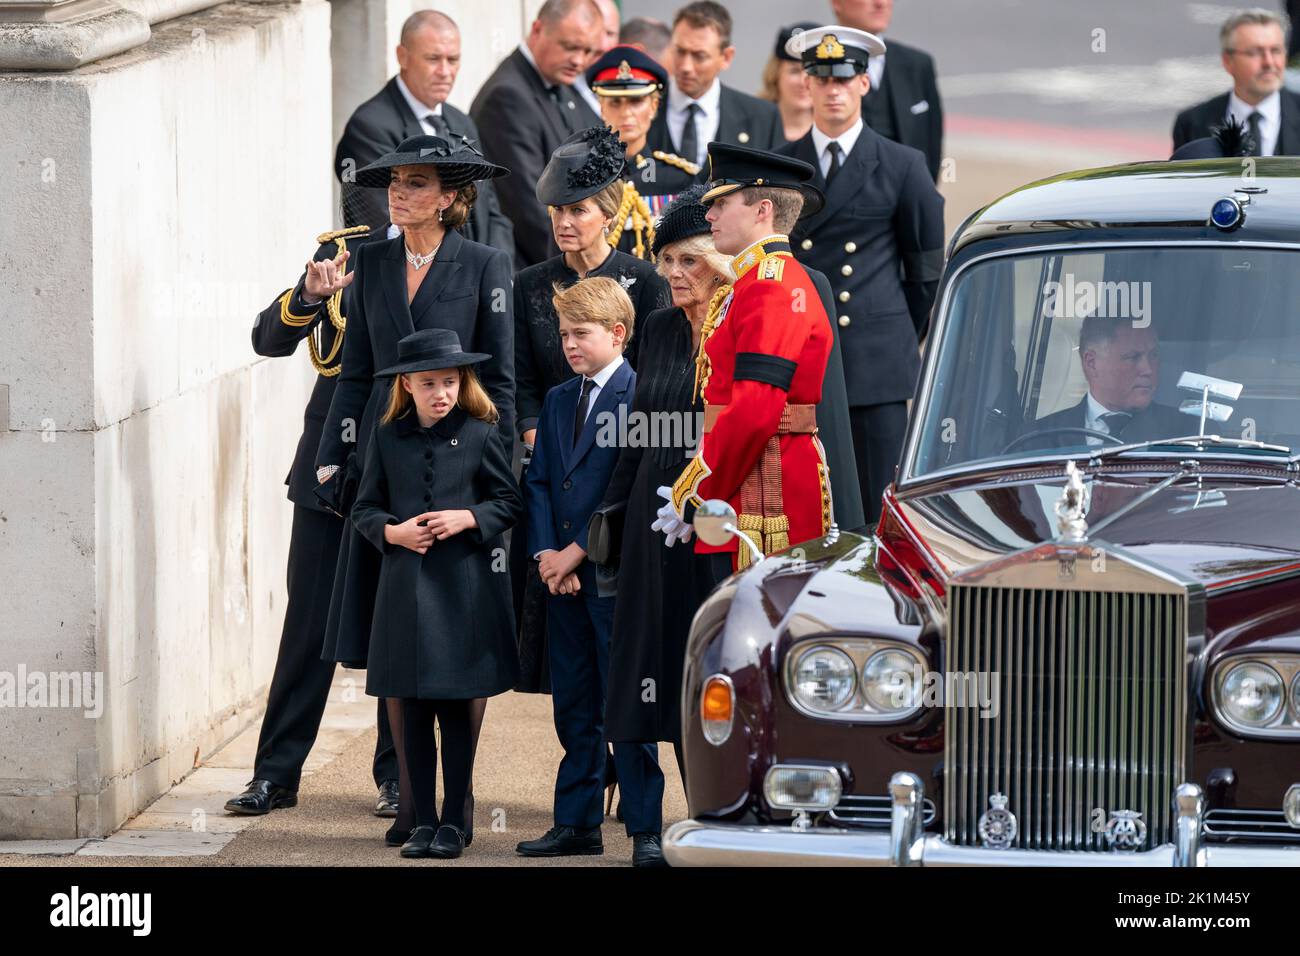 La principessa Charlotte, la principessa del Galles, la contessa di Wessex, il principe George e la regina Consort come la carrozza di stato che porta la bara della regina Elisabetta II arriva a Wellington Arch durante la processione cerimoniale dopo il suo funerale di stato all'Abbazia di Westminster, Londra. Foto Stock